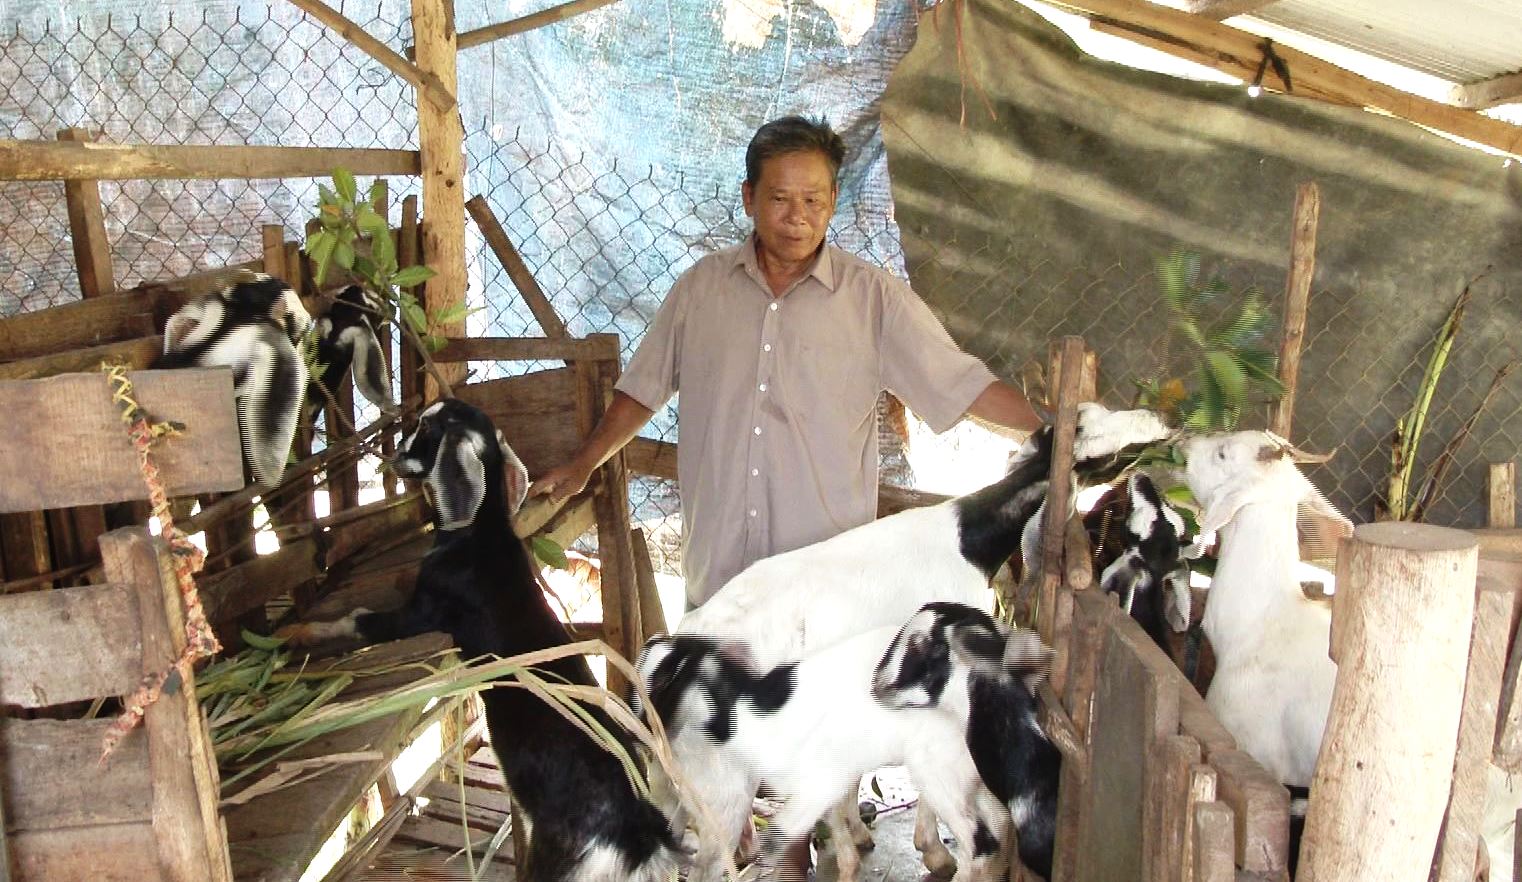 Mô hình nuôi dê tại xã Phú Xuân là 1 trong những mô hình giảm nghèo hiệu quả.jpg